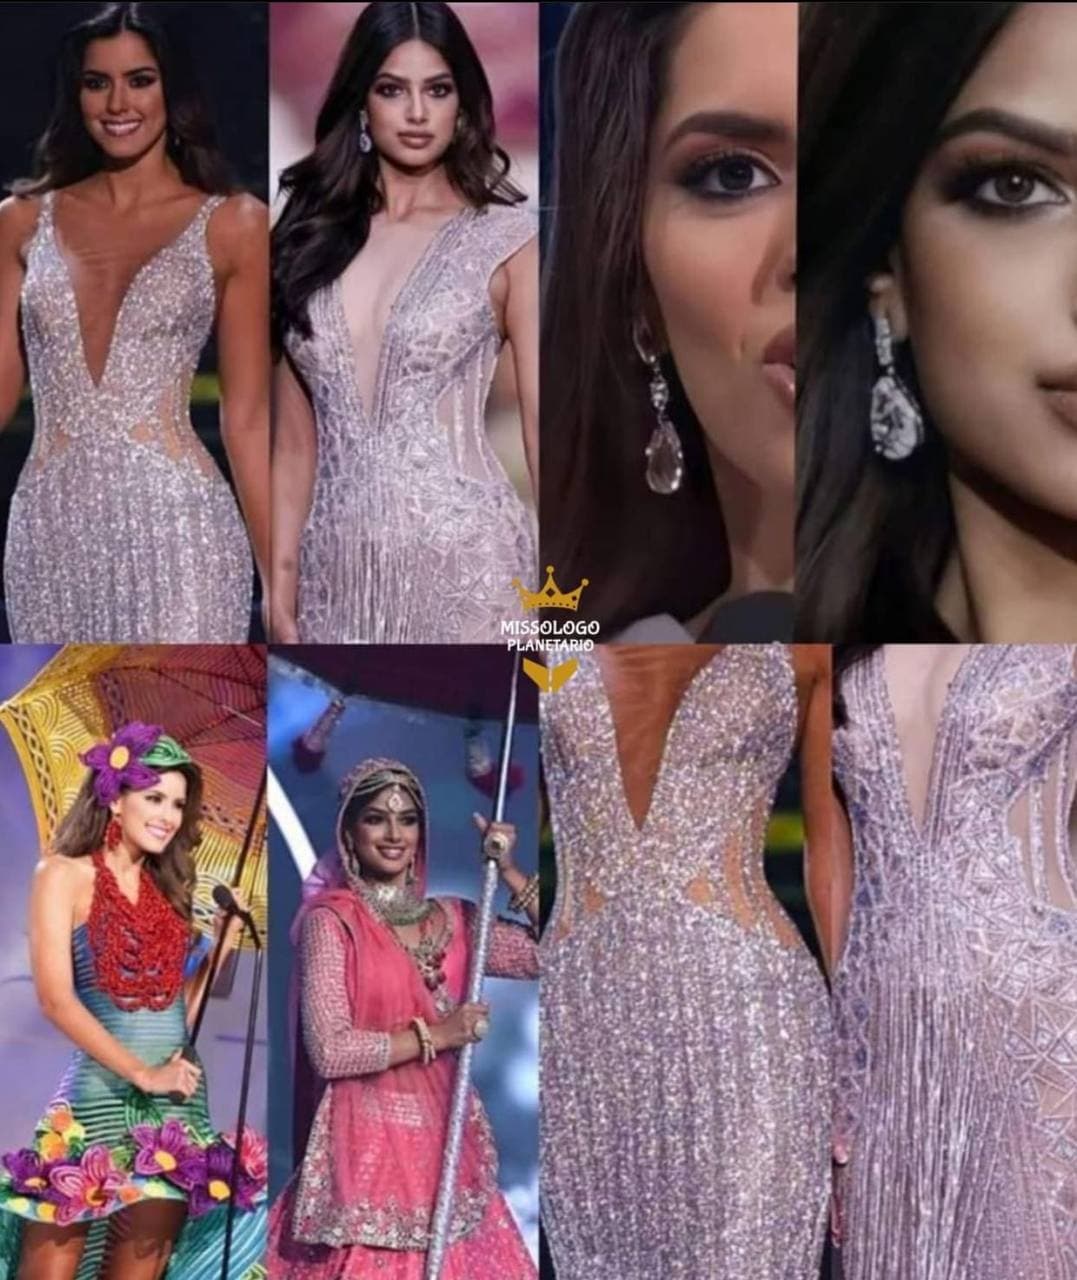 Trang Missology đã chỉ ra những điểm tương đồng bất ngờ giữa 2 Hoa hậu Hoàn vũ Harnaaz Sandhu và Paulina Vega. Bên cạnh váy áo giống nhau, màn sử dụng ô khi trình diễn quốc phục cũng tương đồng bất ngờ.